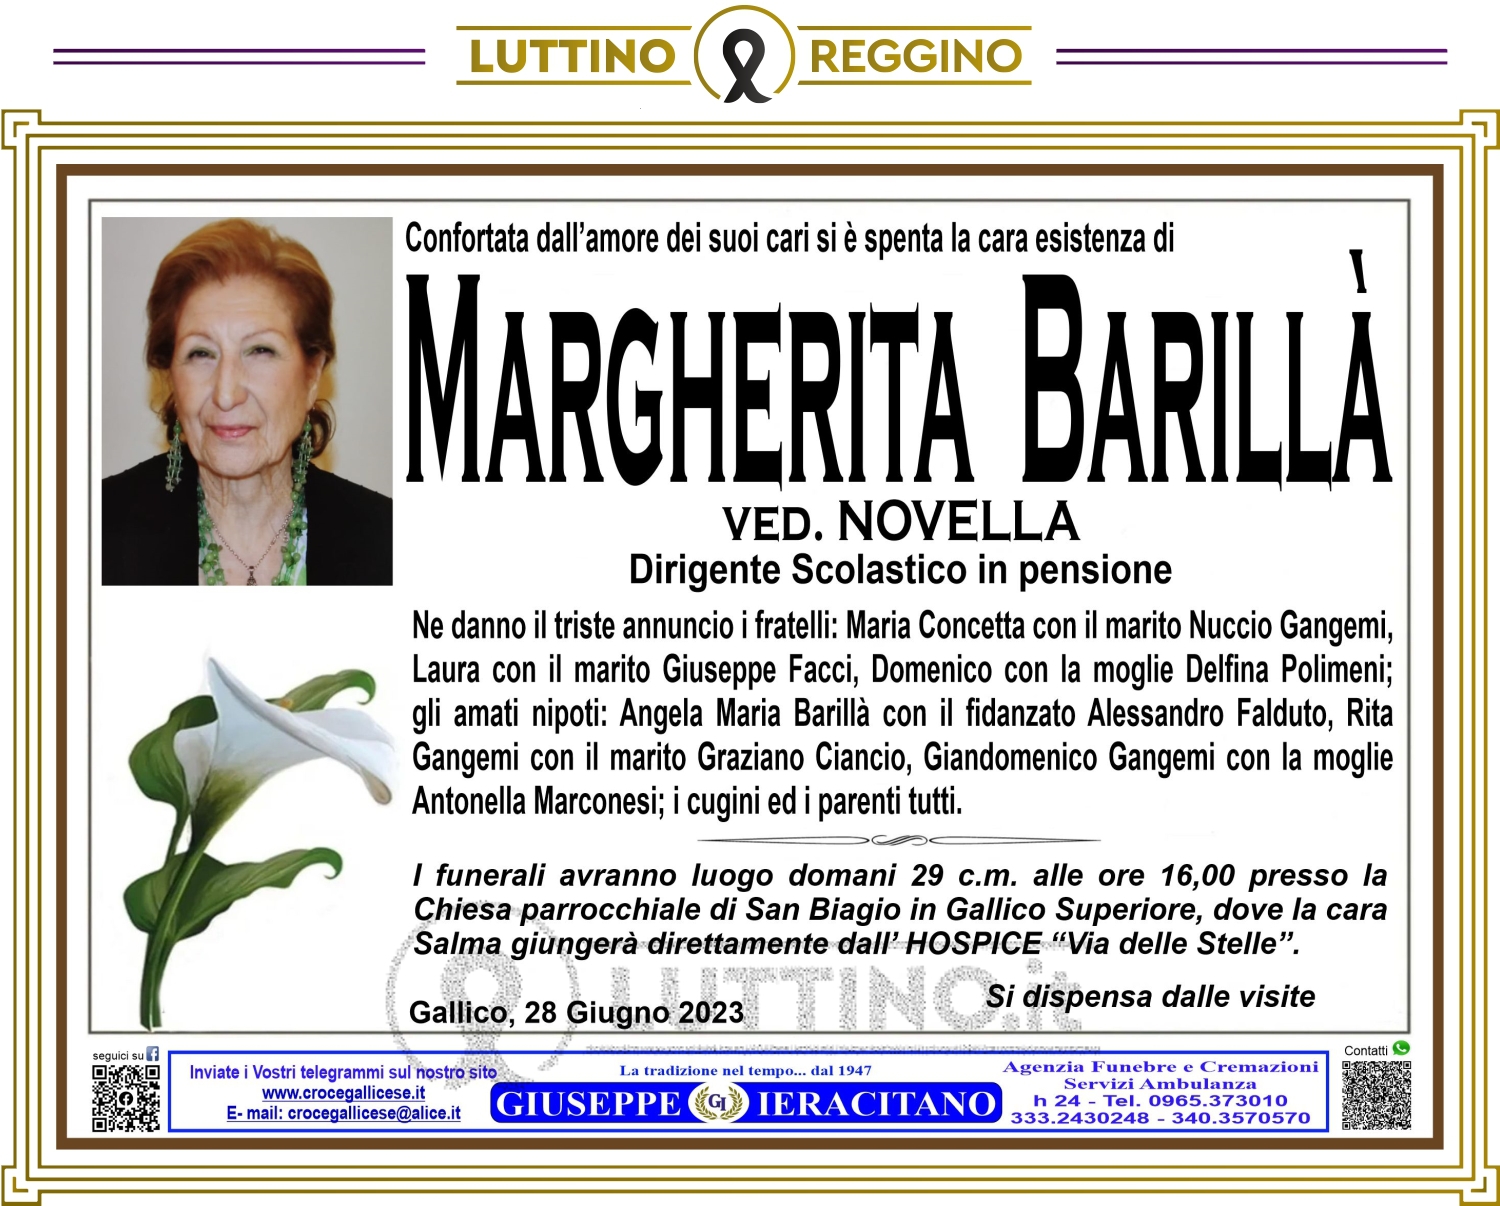 Margherita Barillà